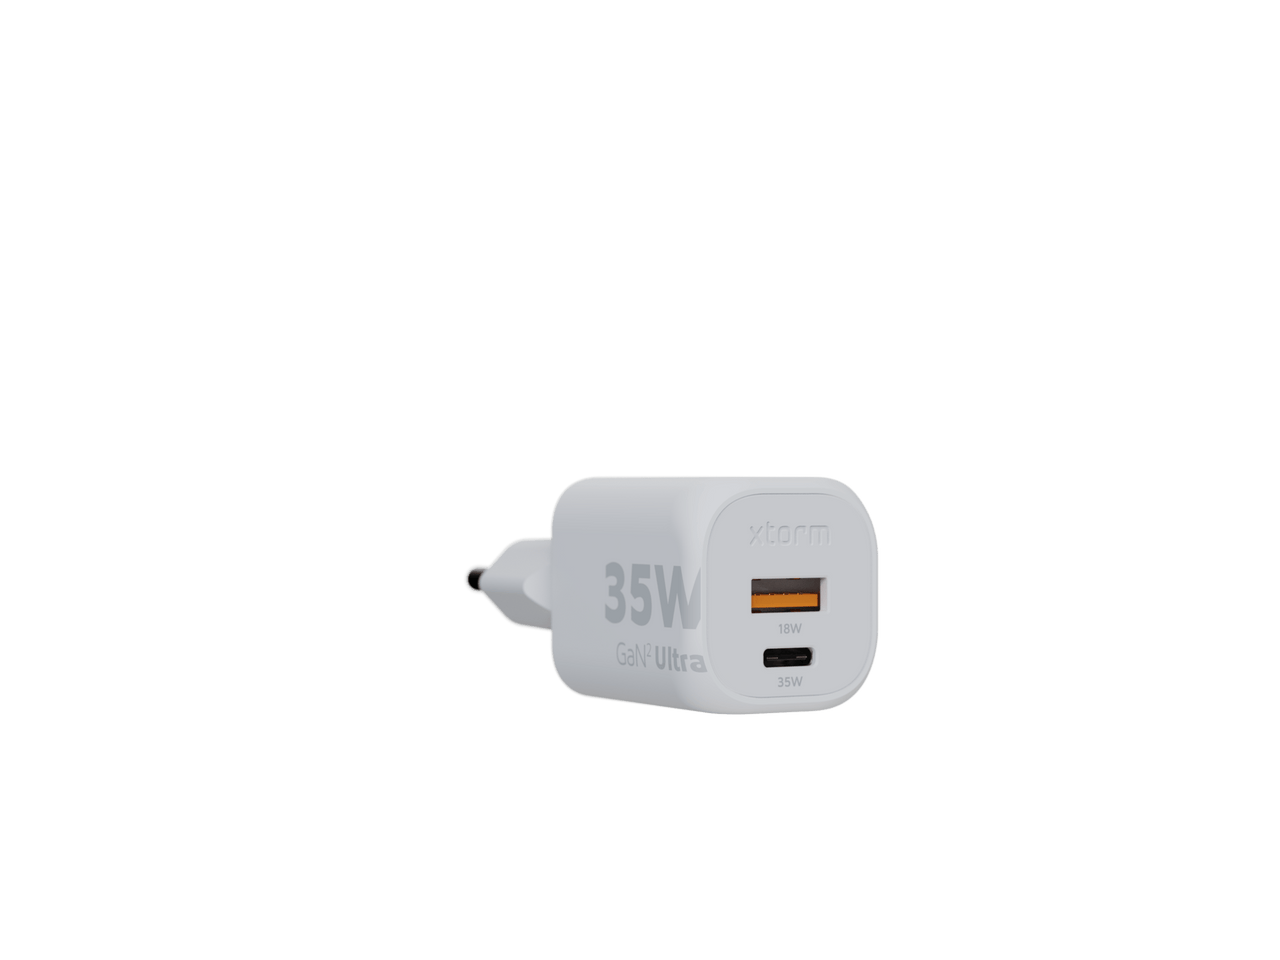 35W GaN2 Ultra Ladegeräte - Xtorm DE